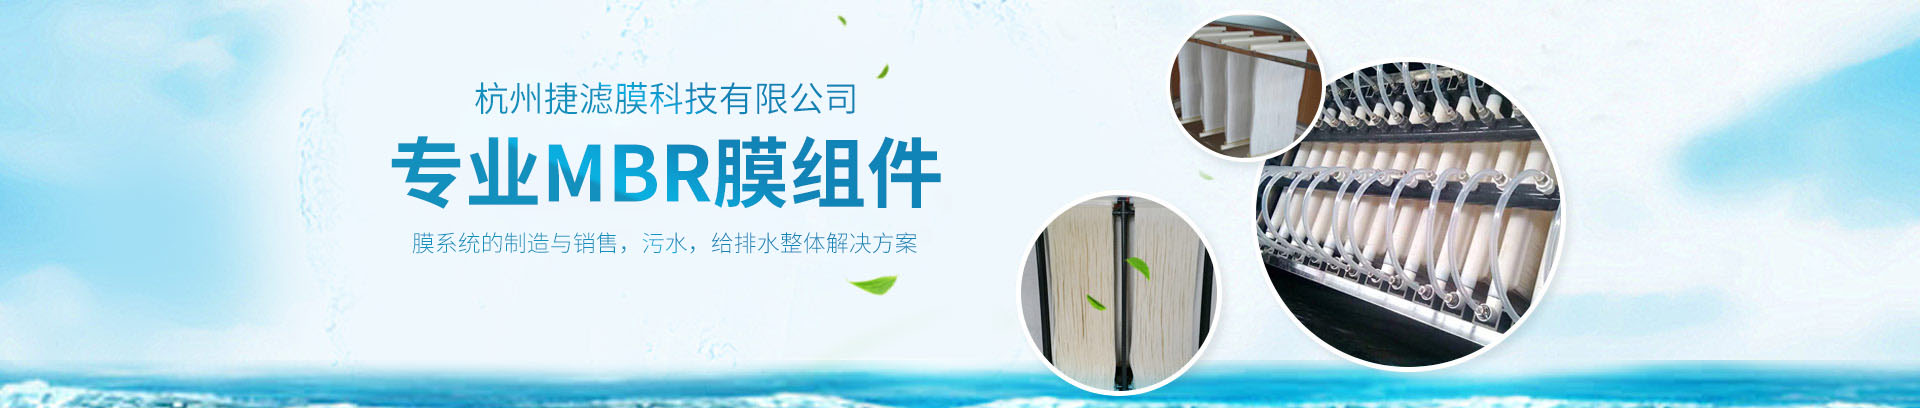 杭州捷滤膜科技-专业MER膜组件生产厂家